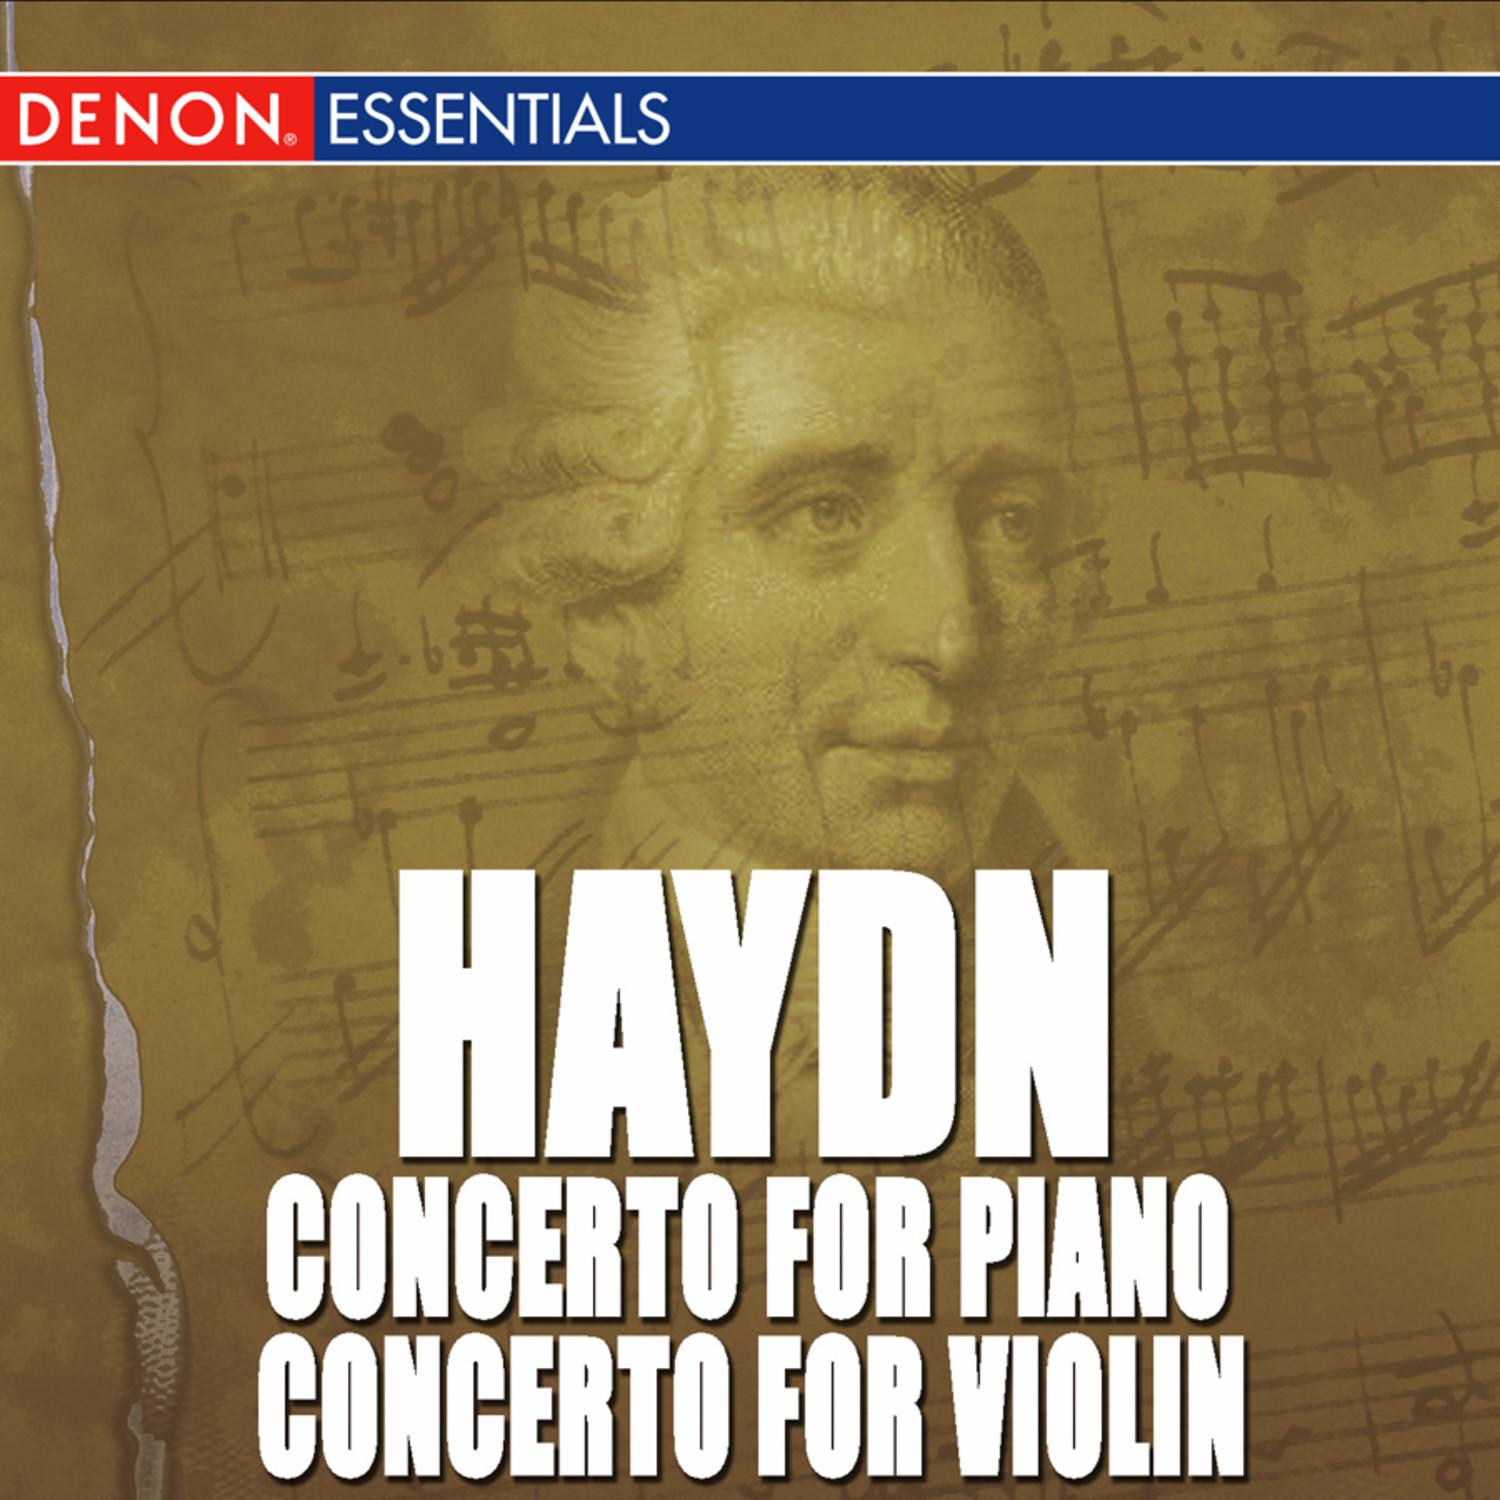 Haydn: Double Concerto for Piano & Violin No. 6 - Concerto for Violin No. 1